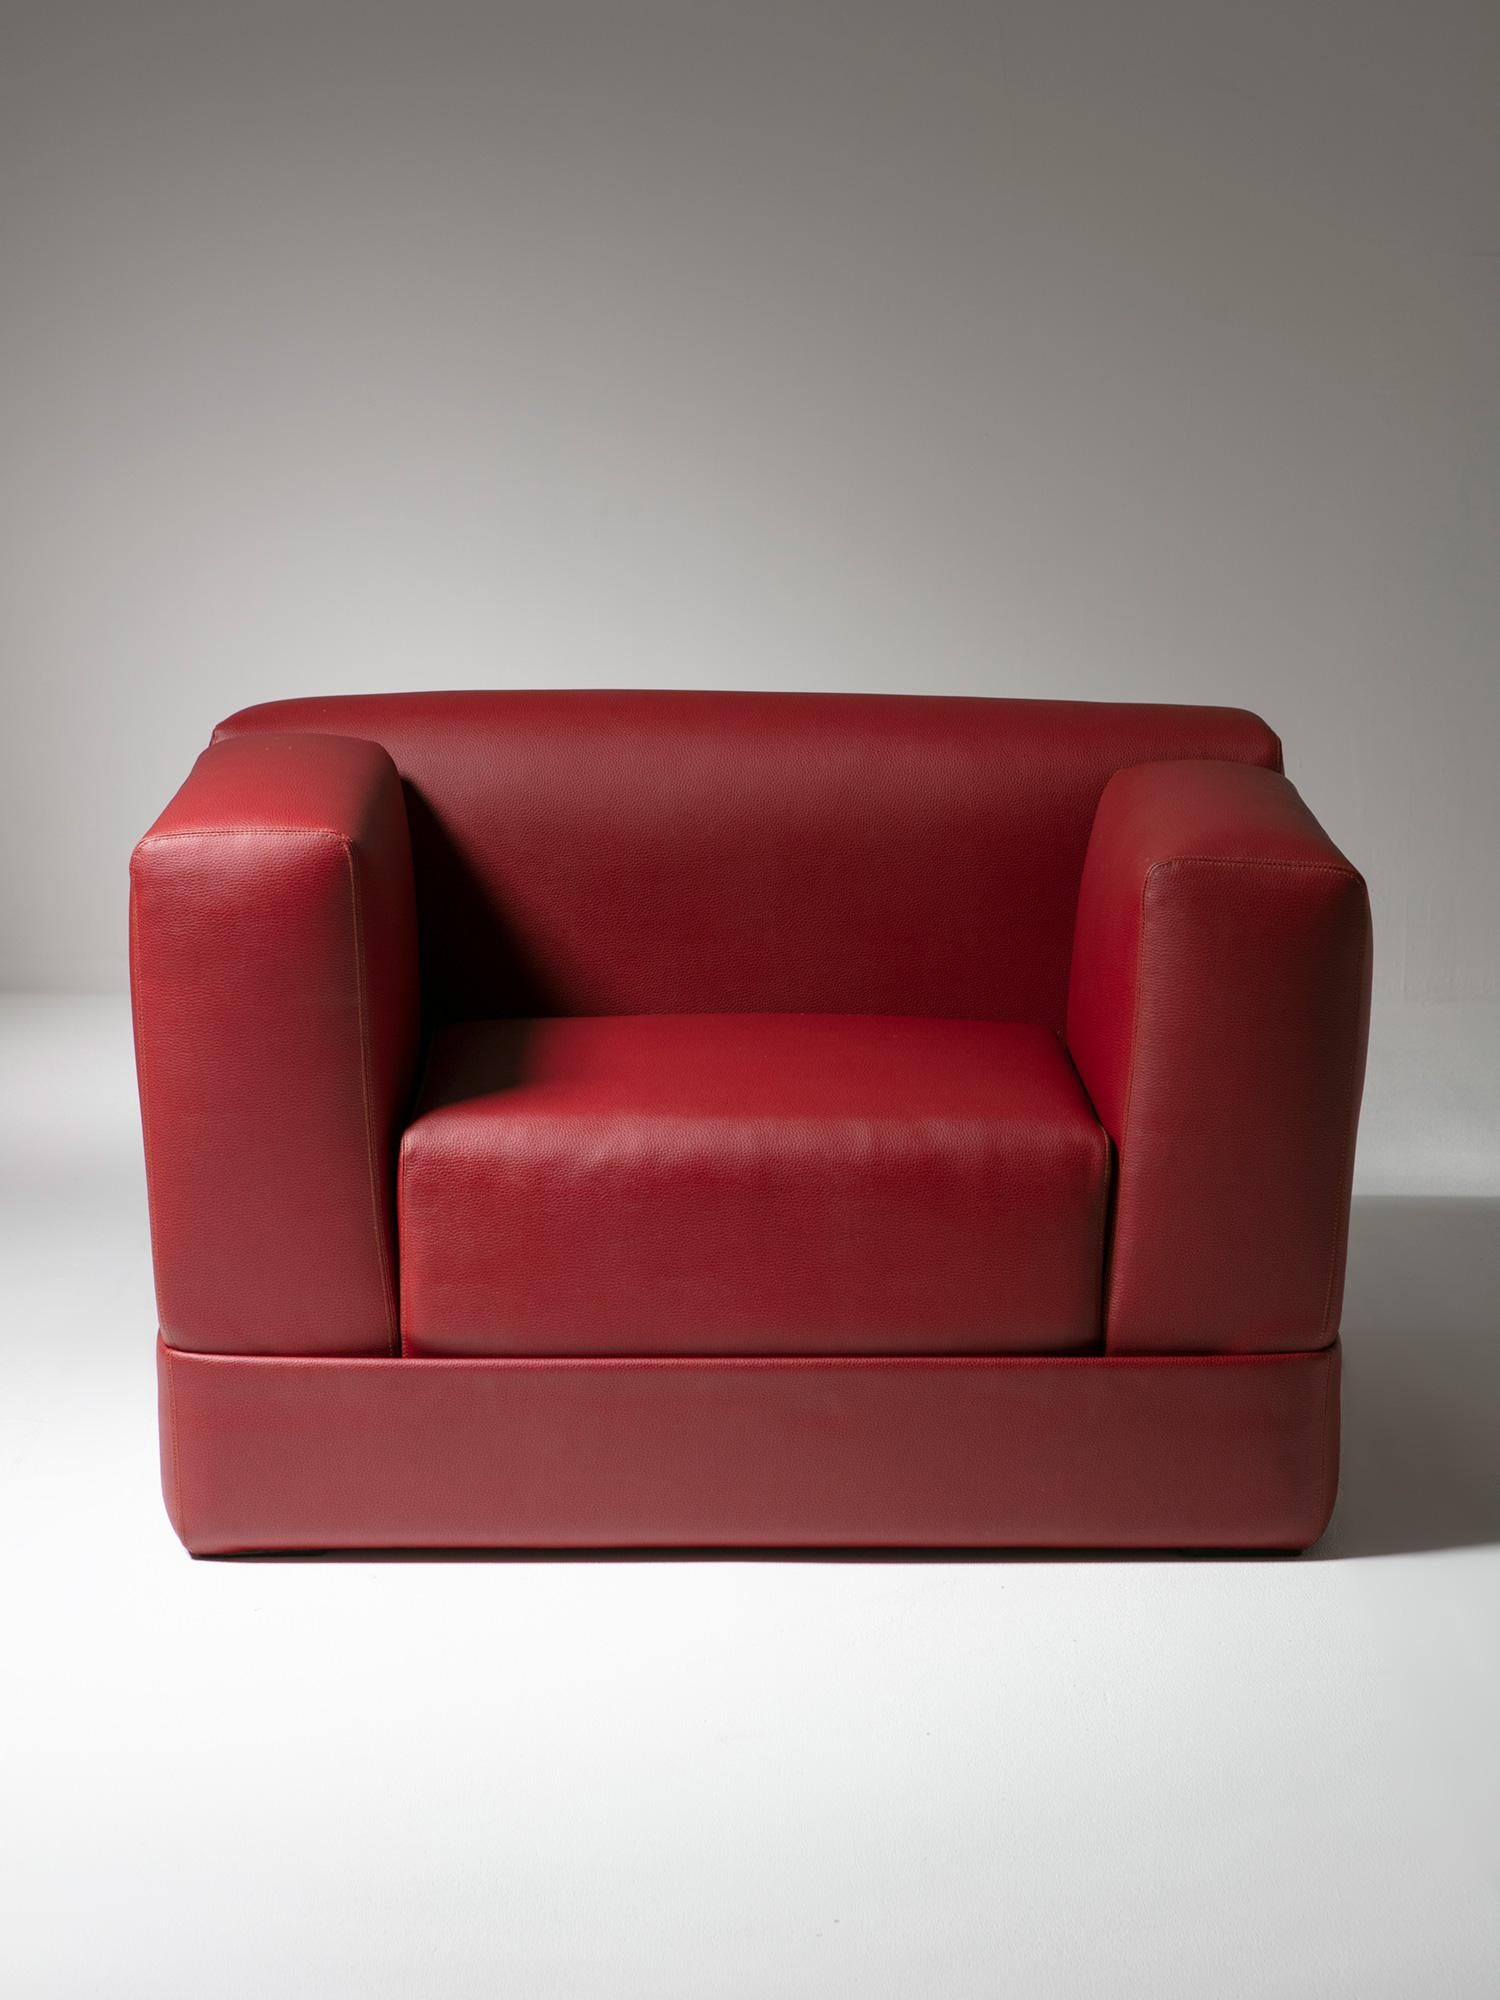 Seltener Container-Sessel von Titina Ammannati und Giampiero Vitelli für Rossi di Albizzate.
Vollständig abgedecktes Untergestell mit vier abnehmbaren Elementen, aus denen der Stuhl besteht.
Faszinierende Interpretation des ikonischen Stuhls